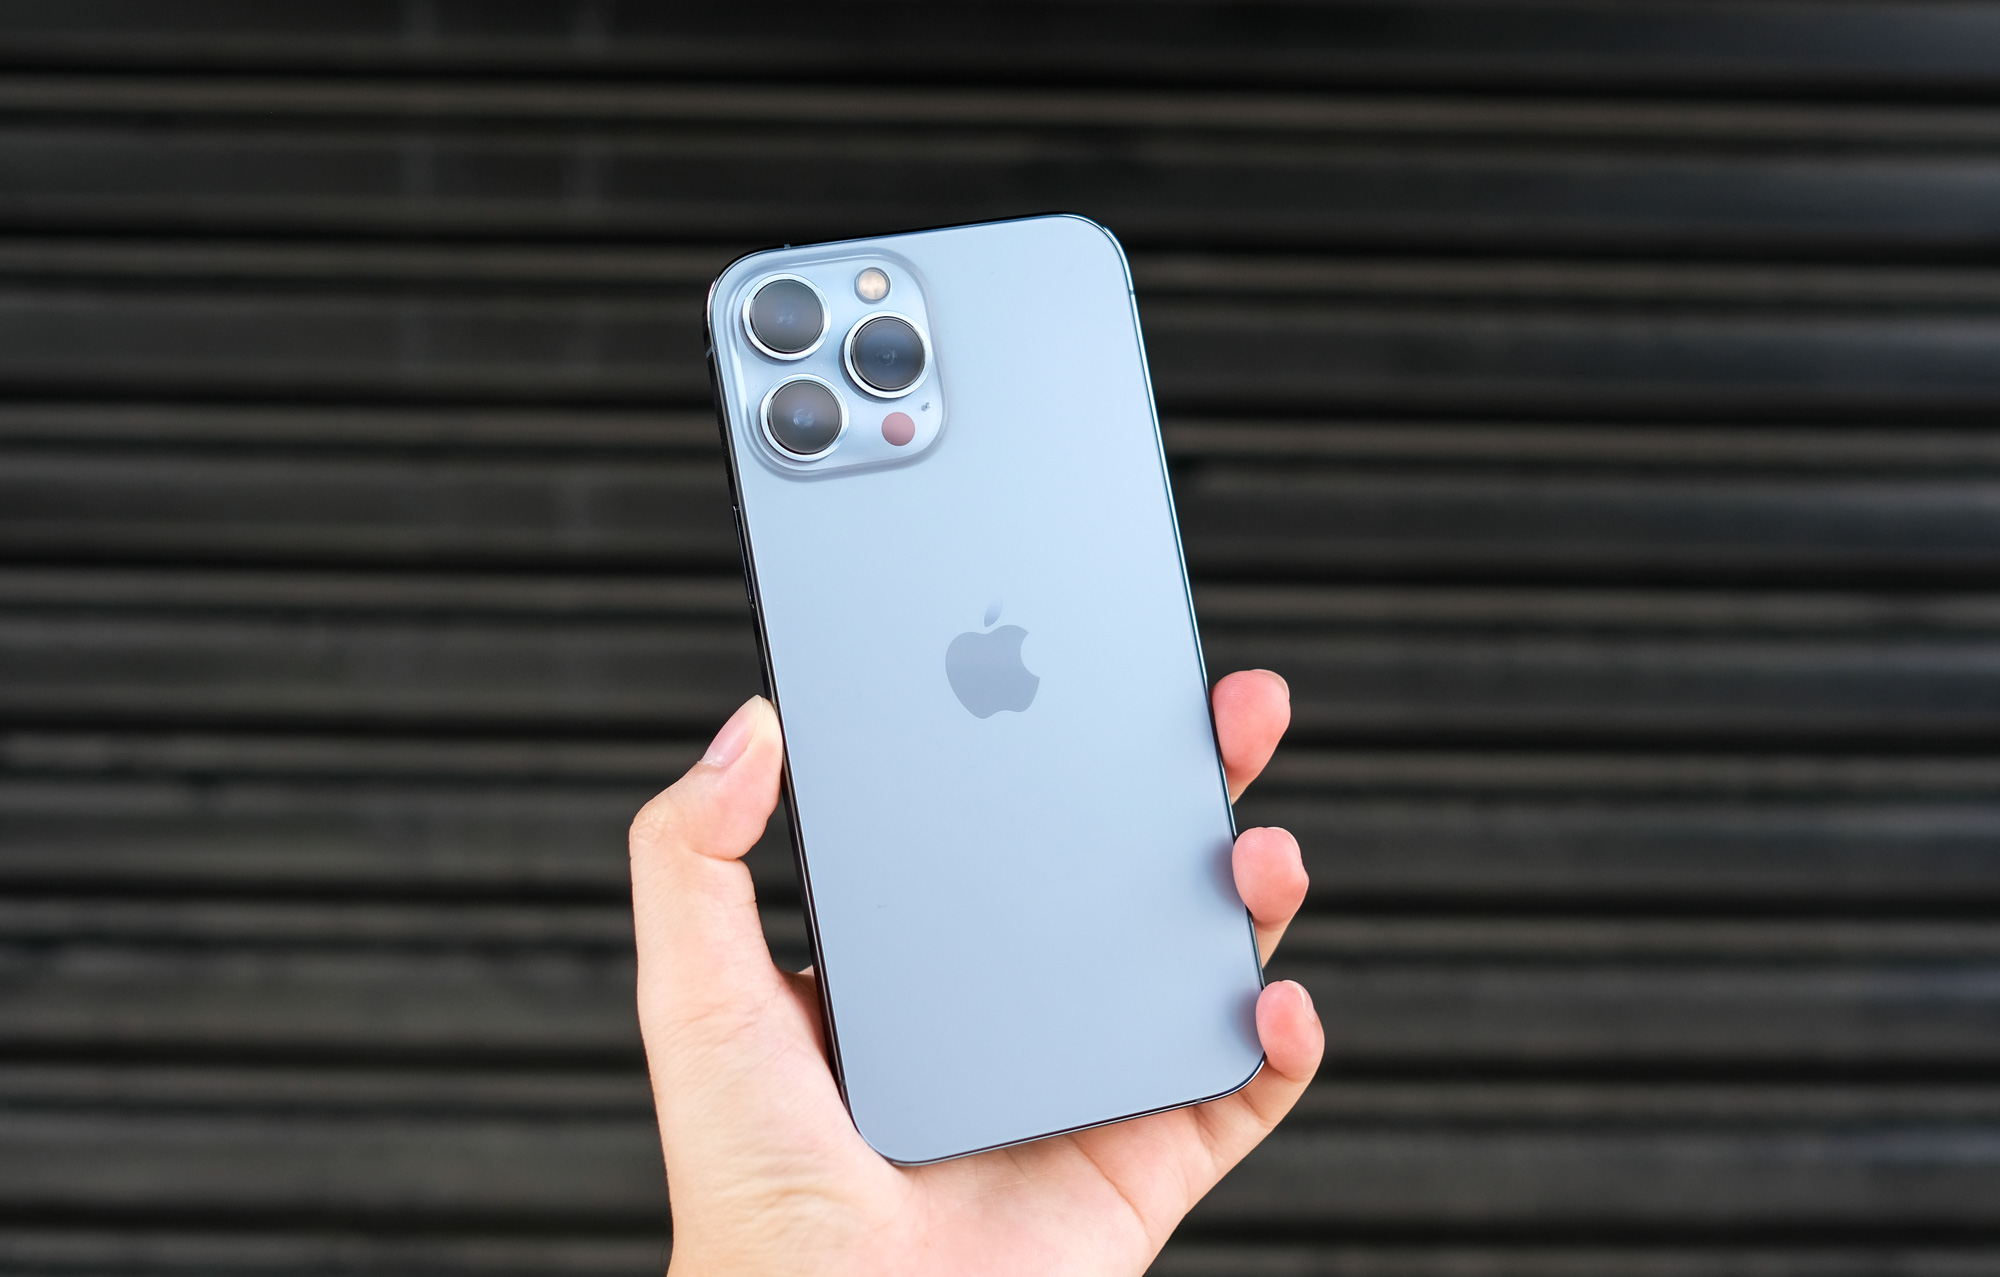 iPhone 13 Pro Max - Với màn hình lớn, độ phân giải cao và camera kép đột phá cùng sức mạnh của chip A15 Bionic, chiếc điện thoại iPhone 13 Pro Max sẽ mang đến cho bạn trải nghiệm xem ảnh và chụp ảnh chưa từng có.